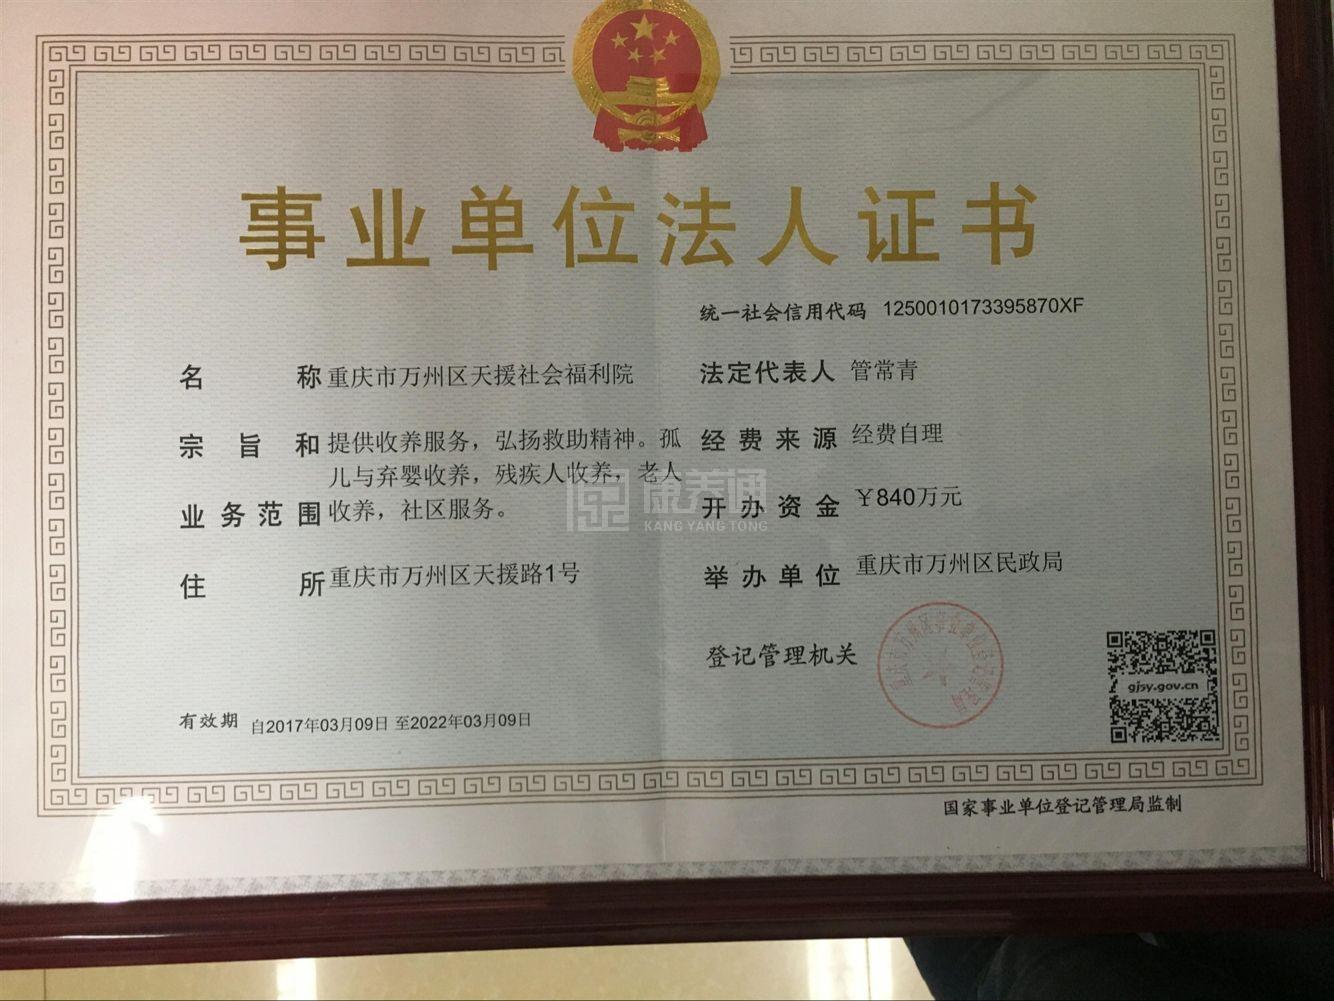 重庆市万州区天援社会福利院服务项目图6让长者体面而尊严地生活